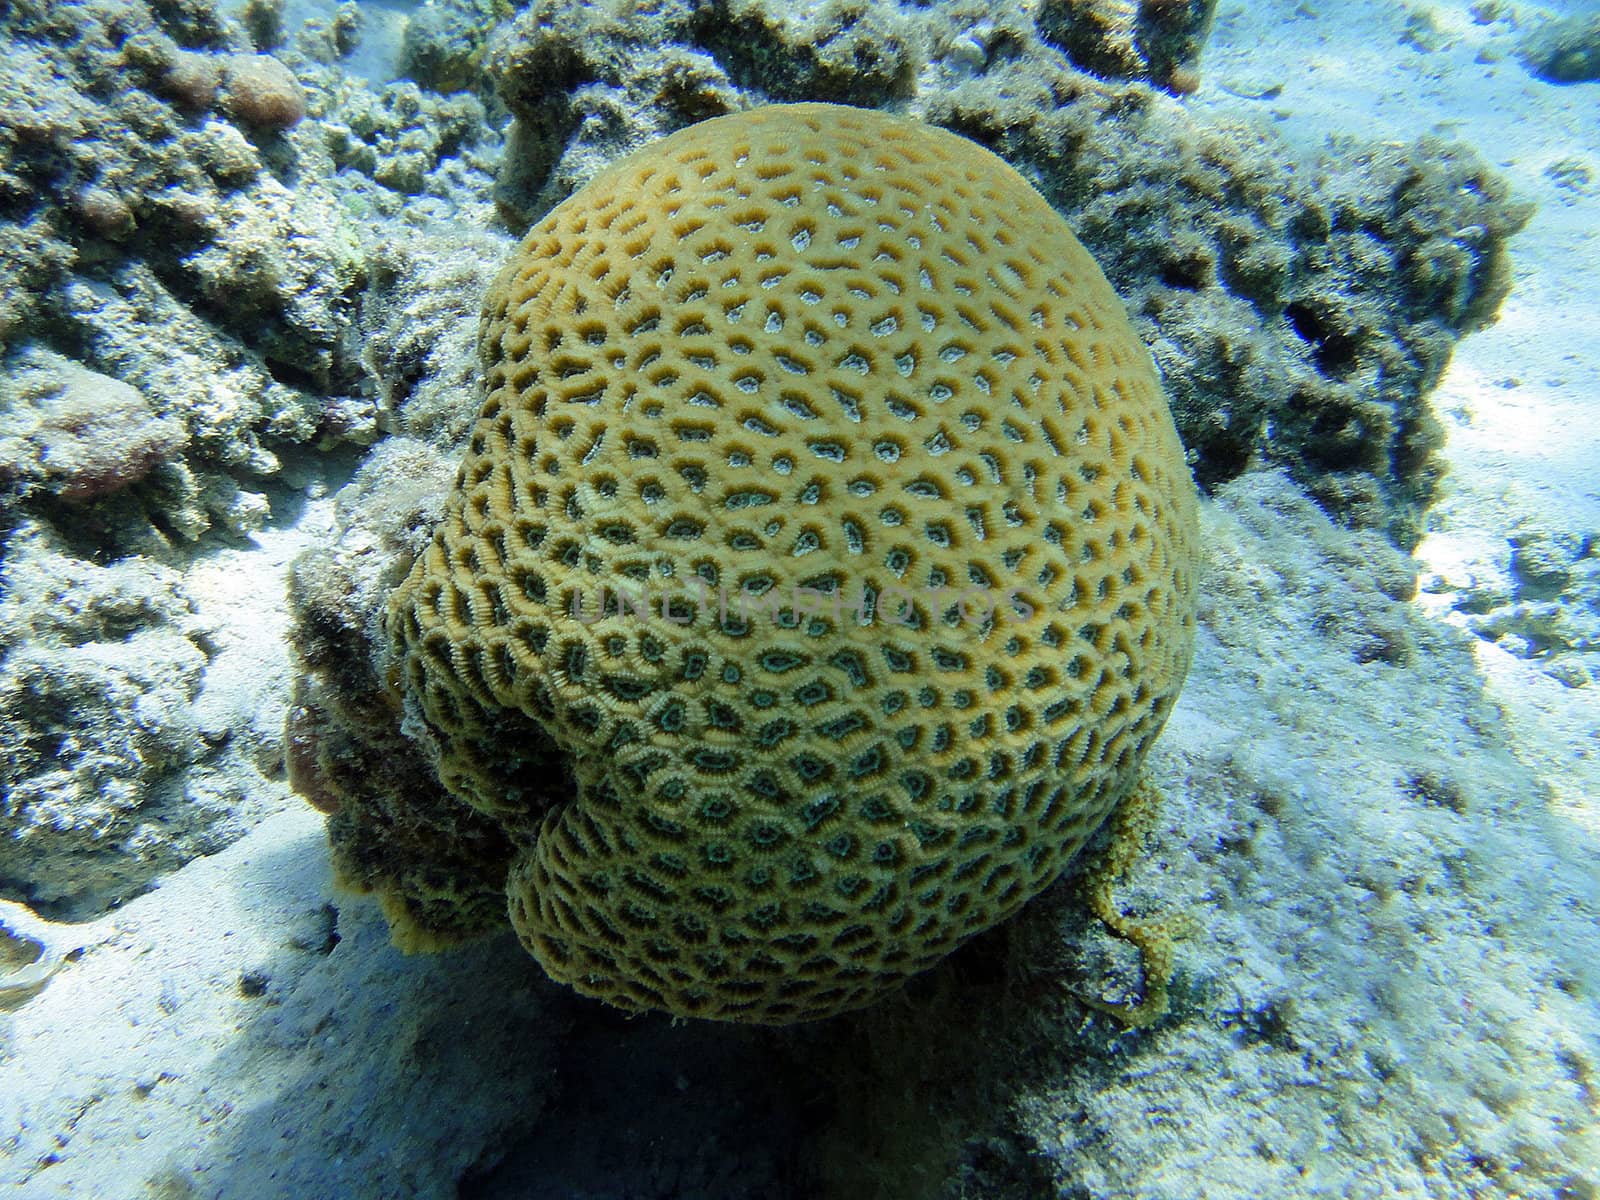 Globular coral by georg777